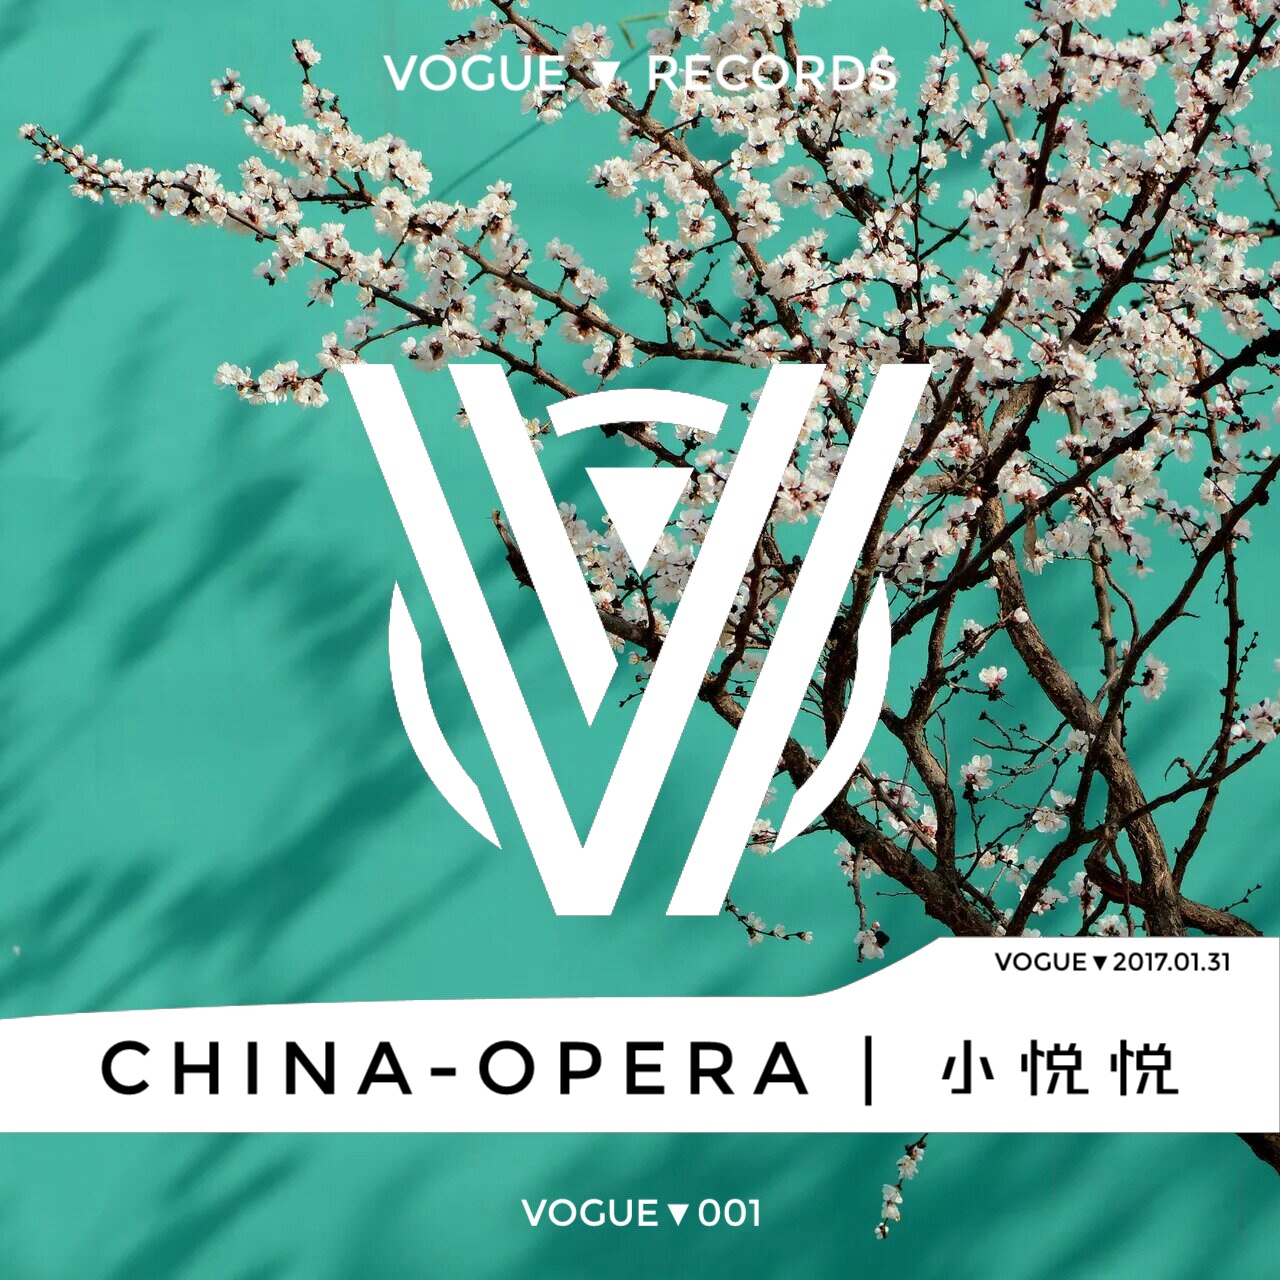 China-Opera